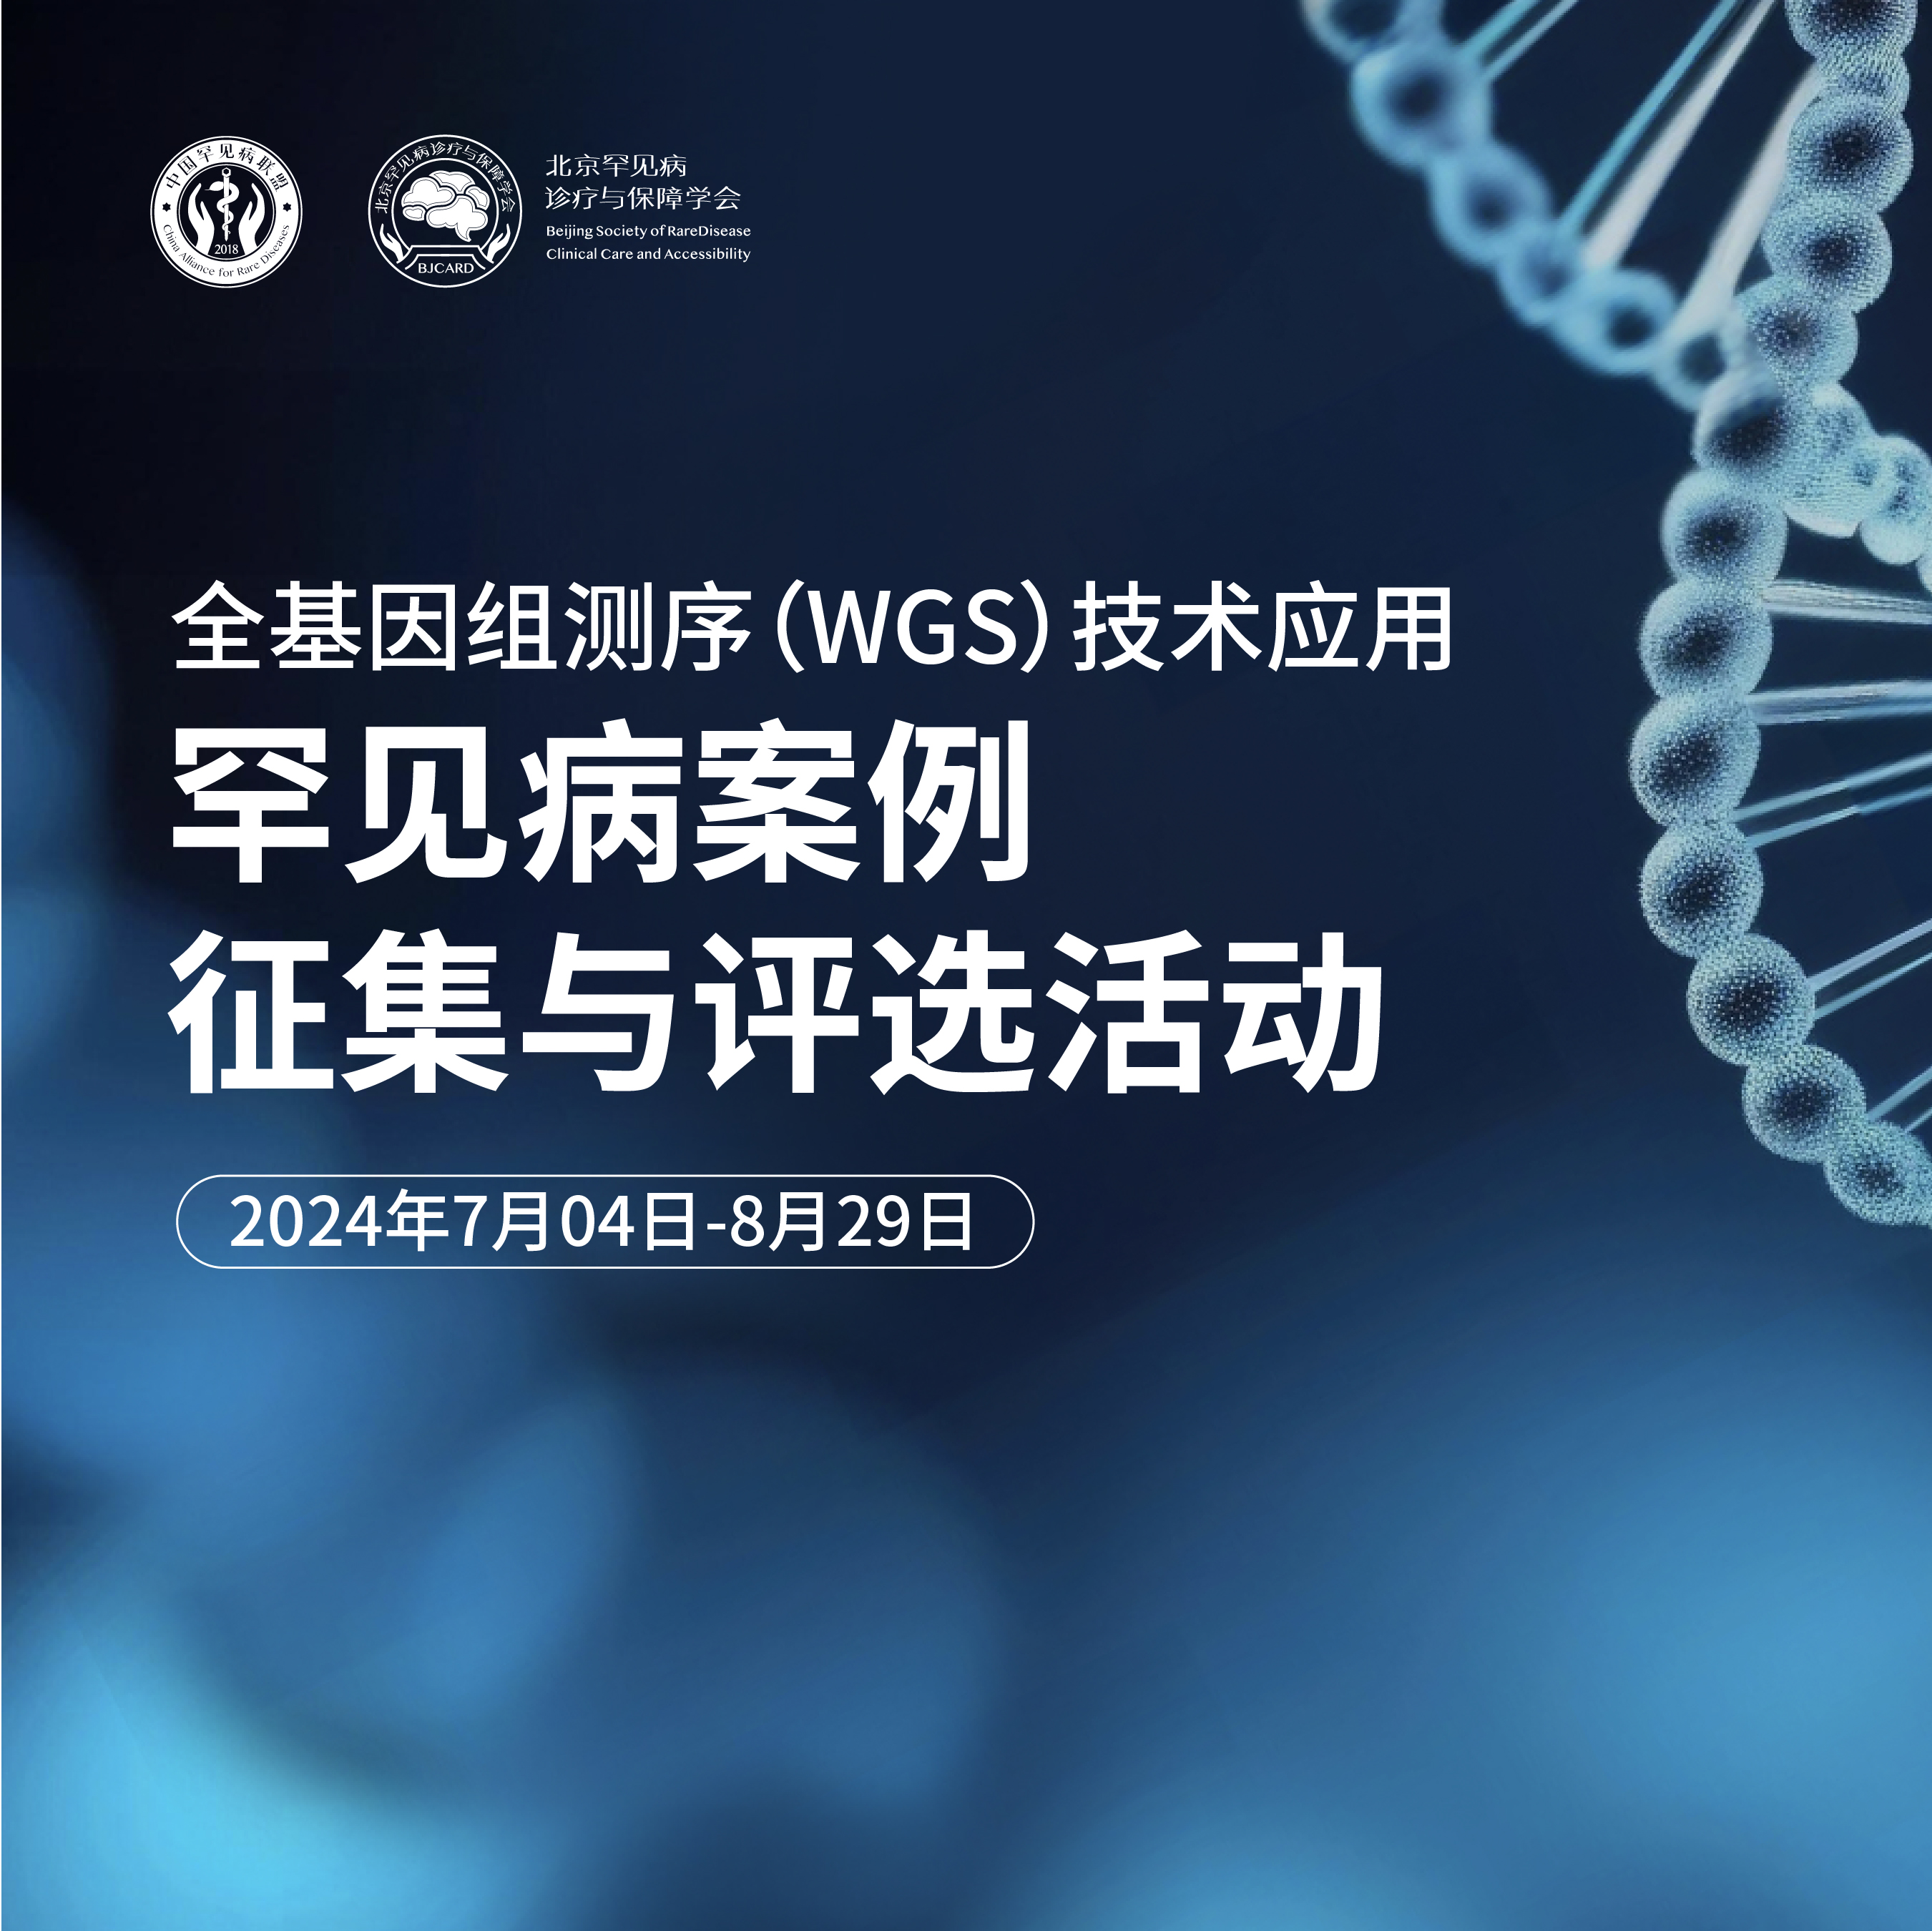 全基因组测序（WGS）技术应用的罕见病案例征集与评选活动的通知